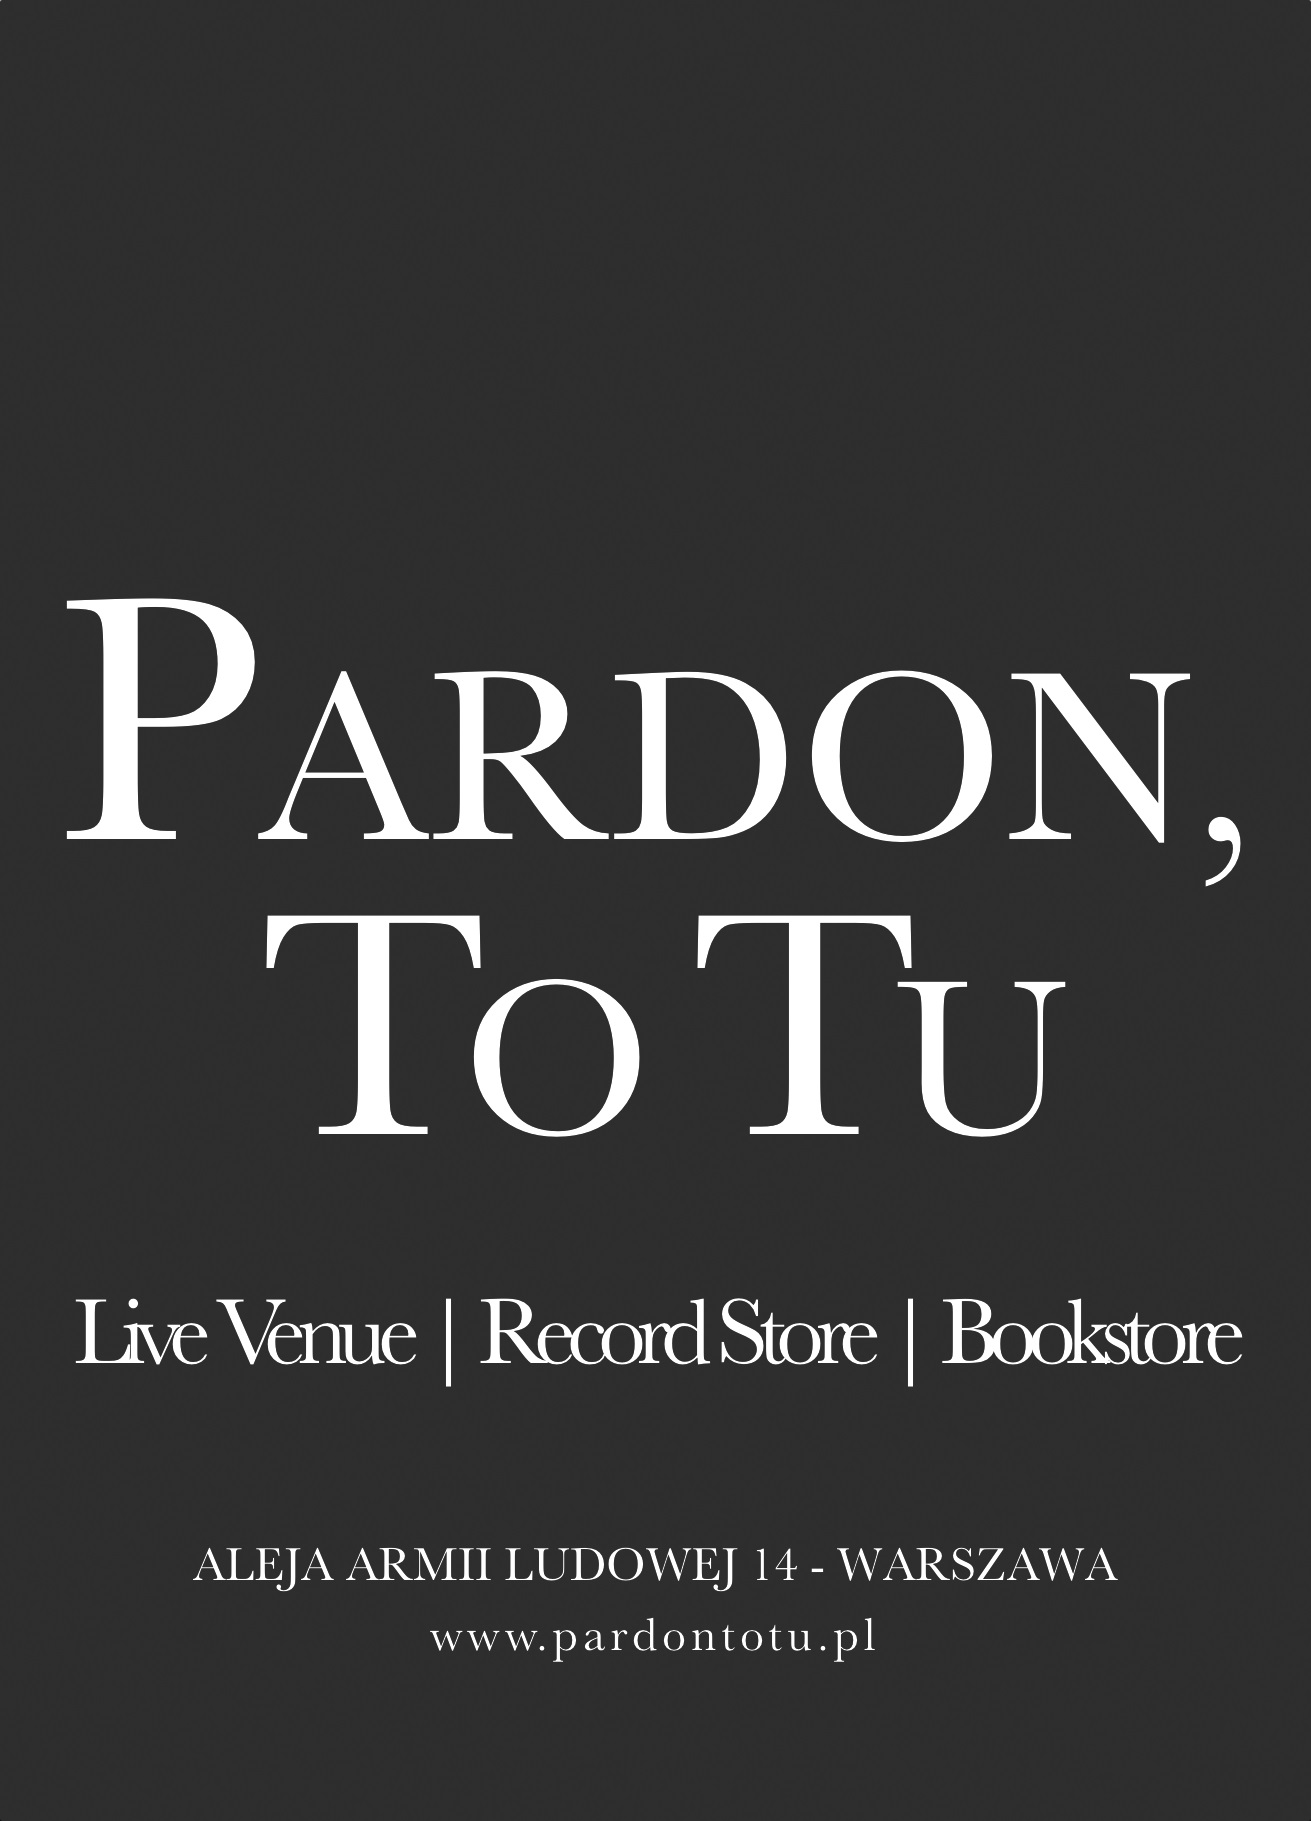 Pardo, To Tu